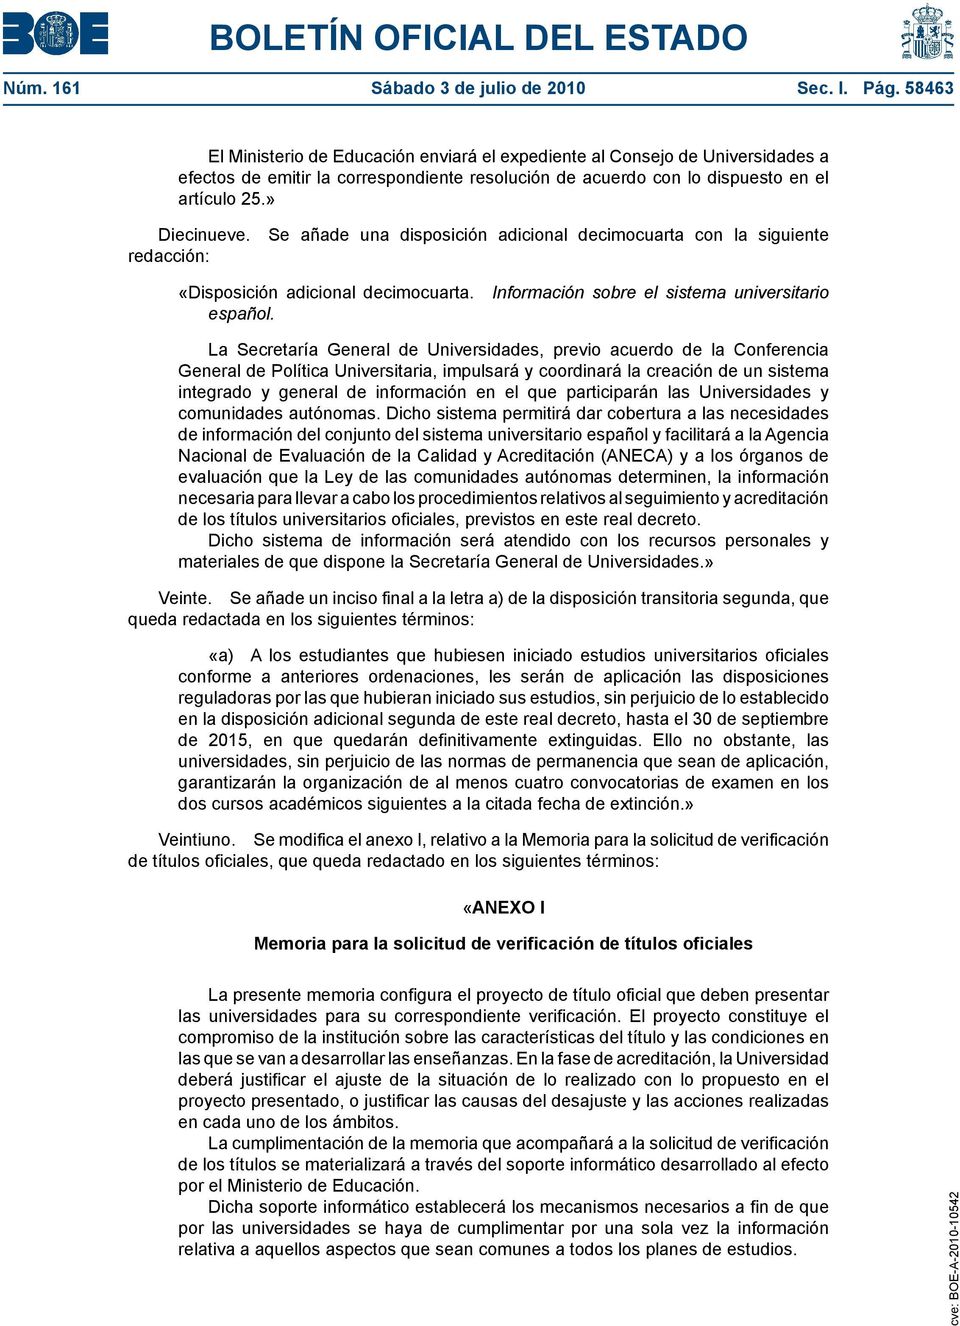 Se añade una disposición adicional decimocuarta con la siguiente redacción: «Disposición adicional decimocuarta. Información sobre el sistema universitario español.